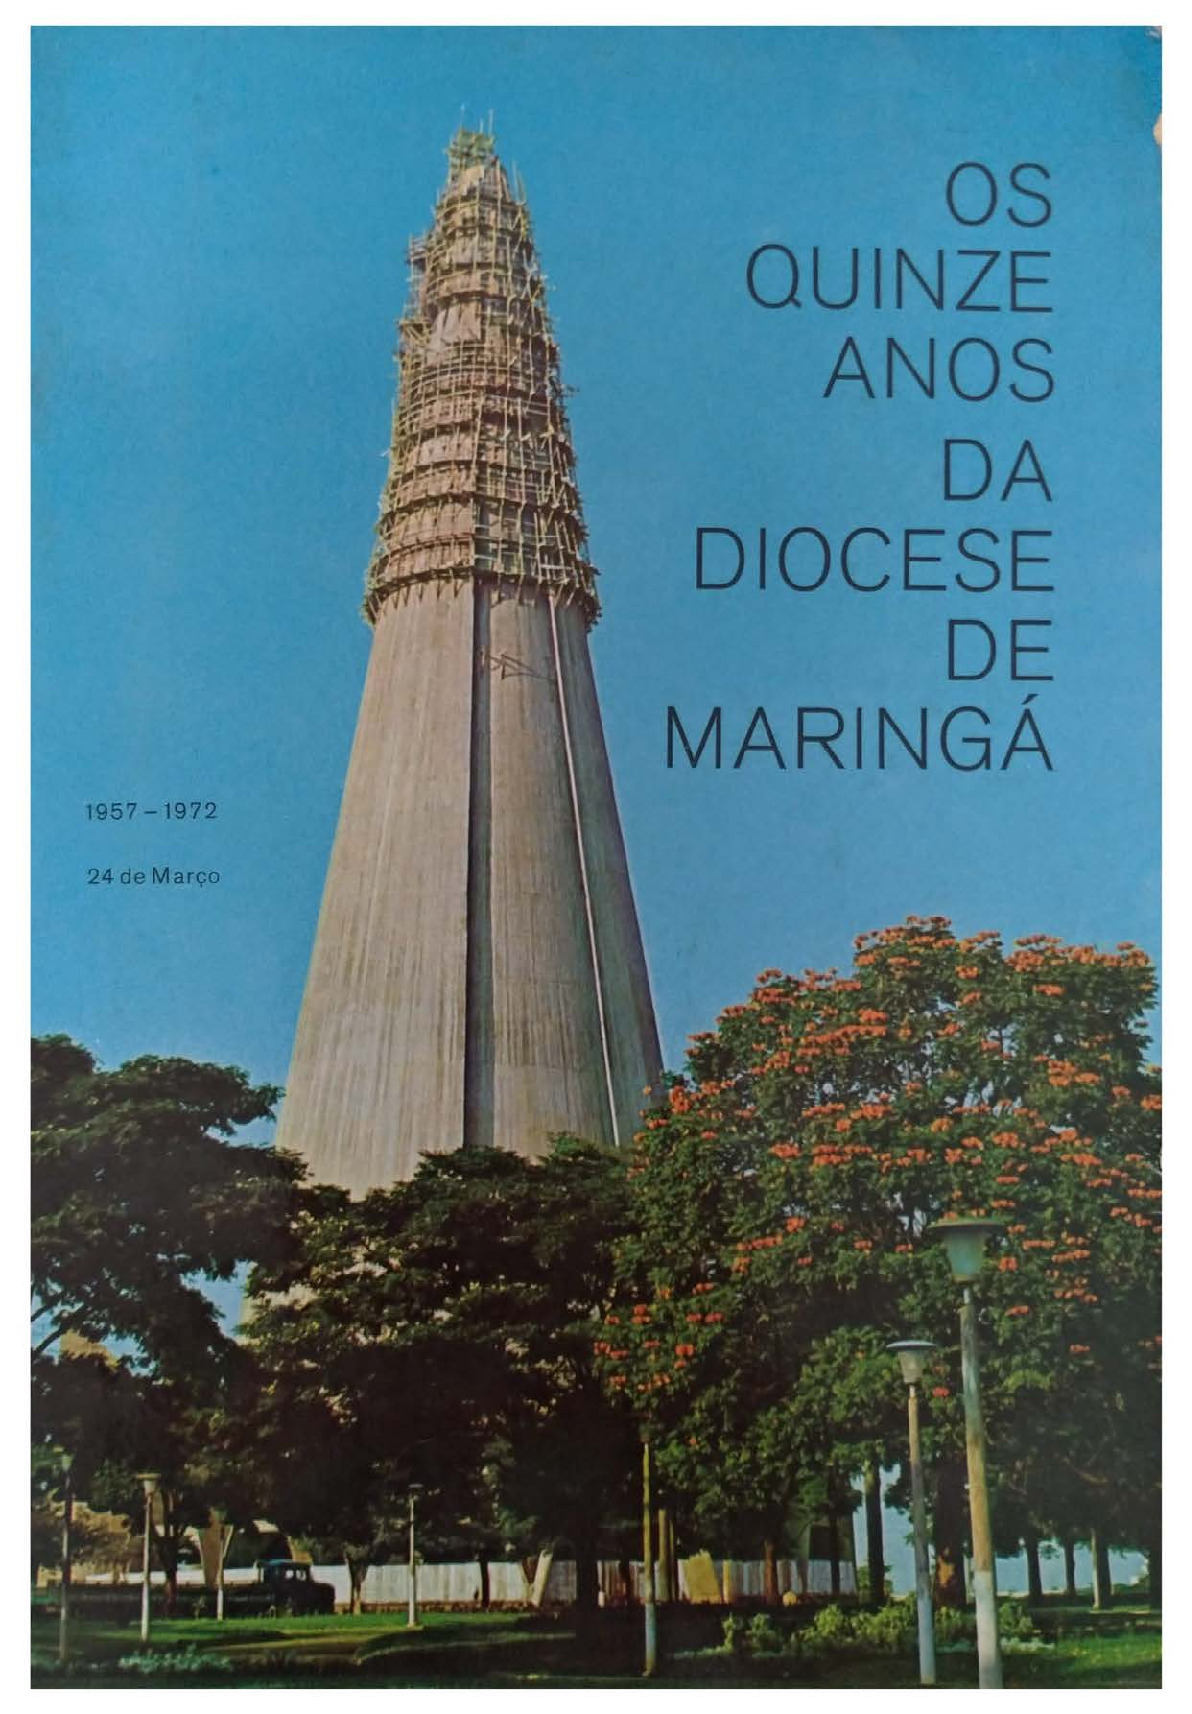 Os 15 anos da Diocese de Maringá - 1972